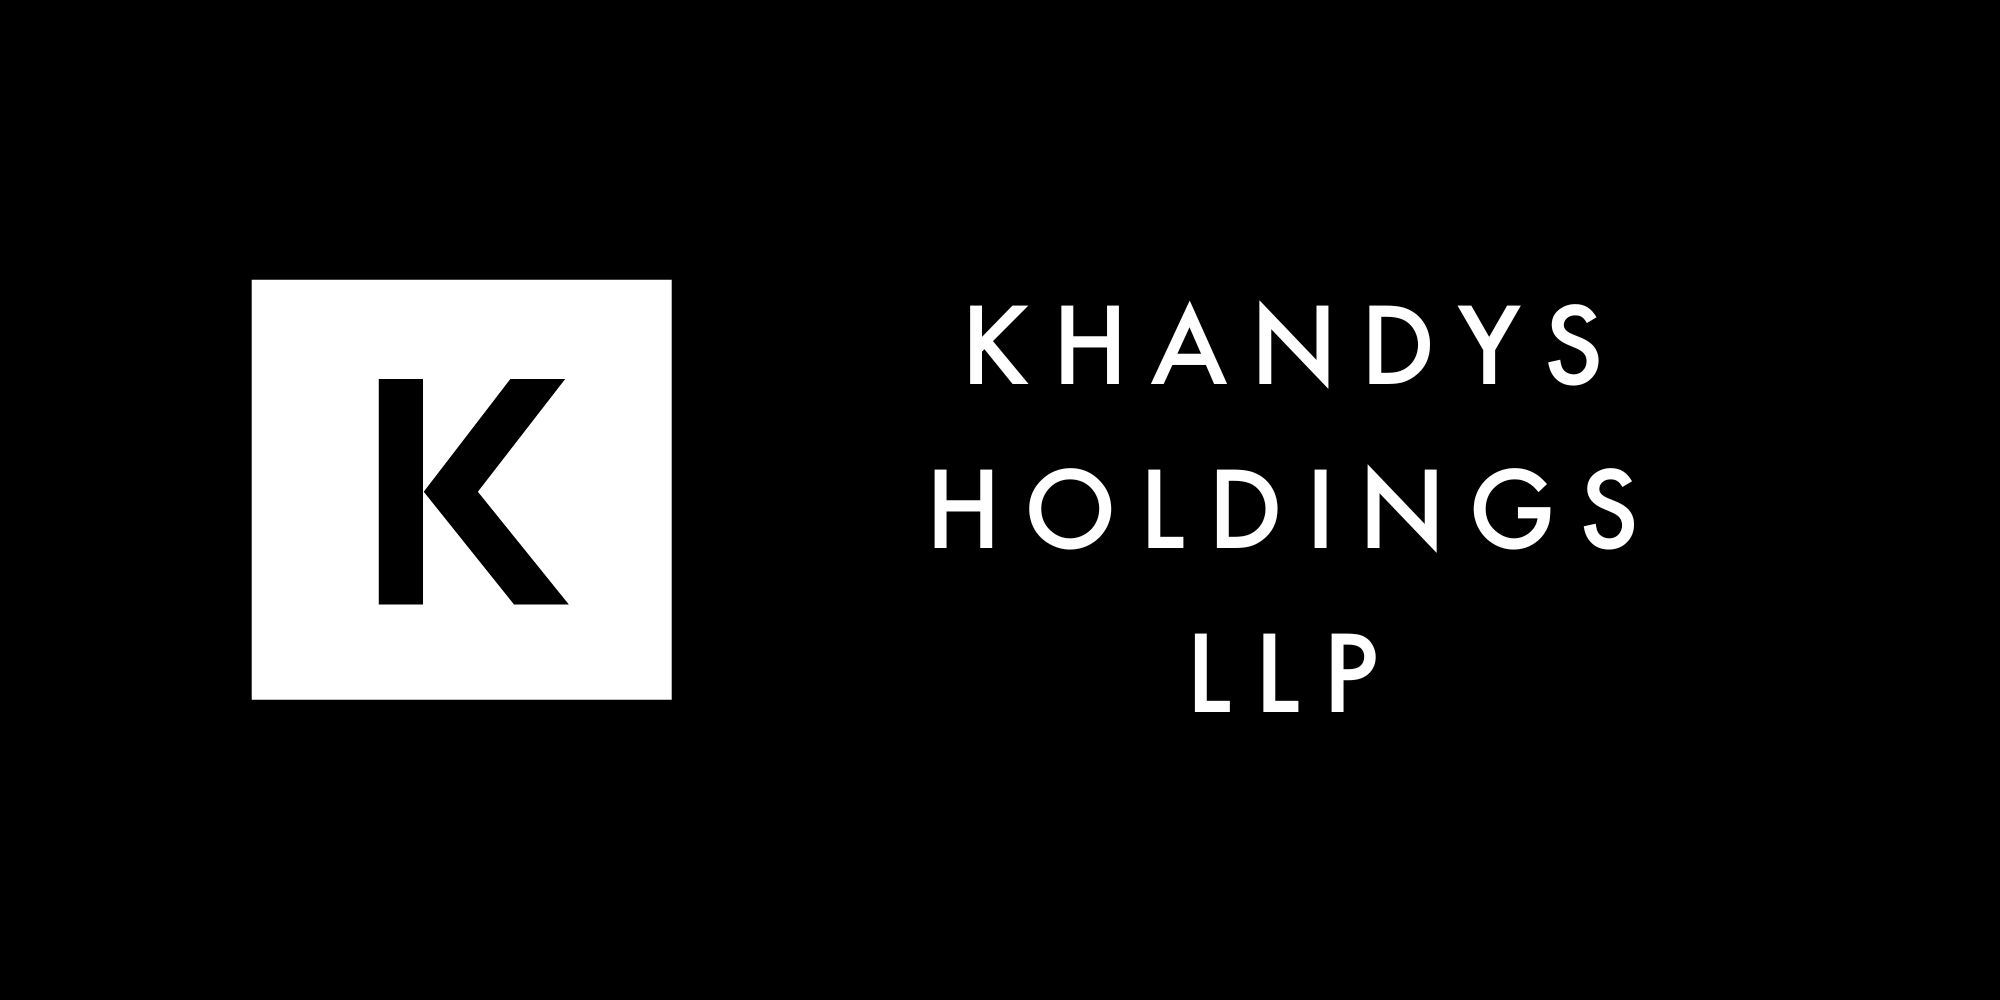 Khandys Holdings LLP | Khandys